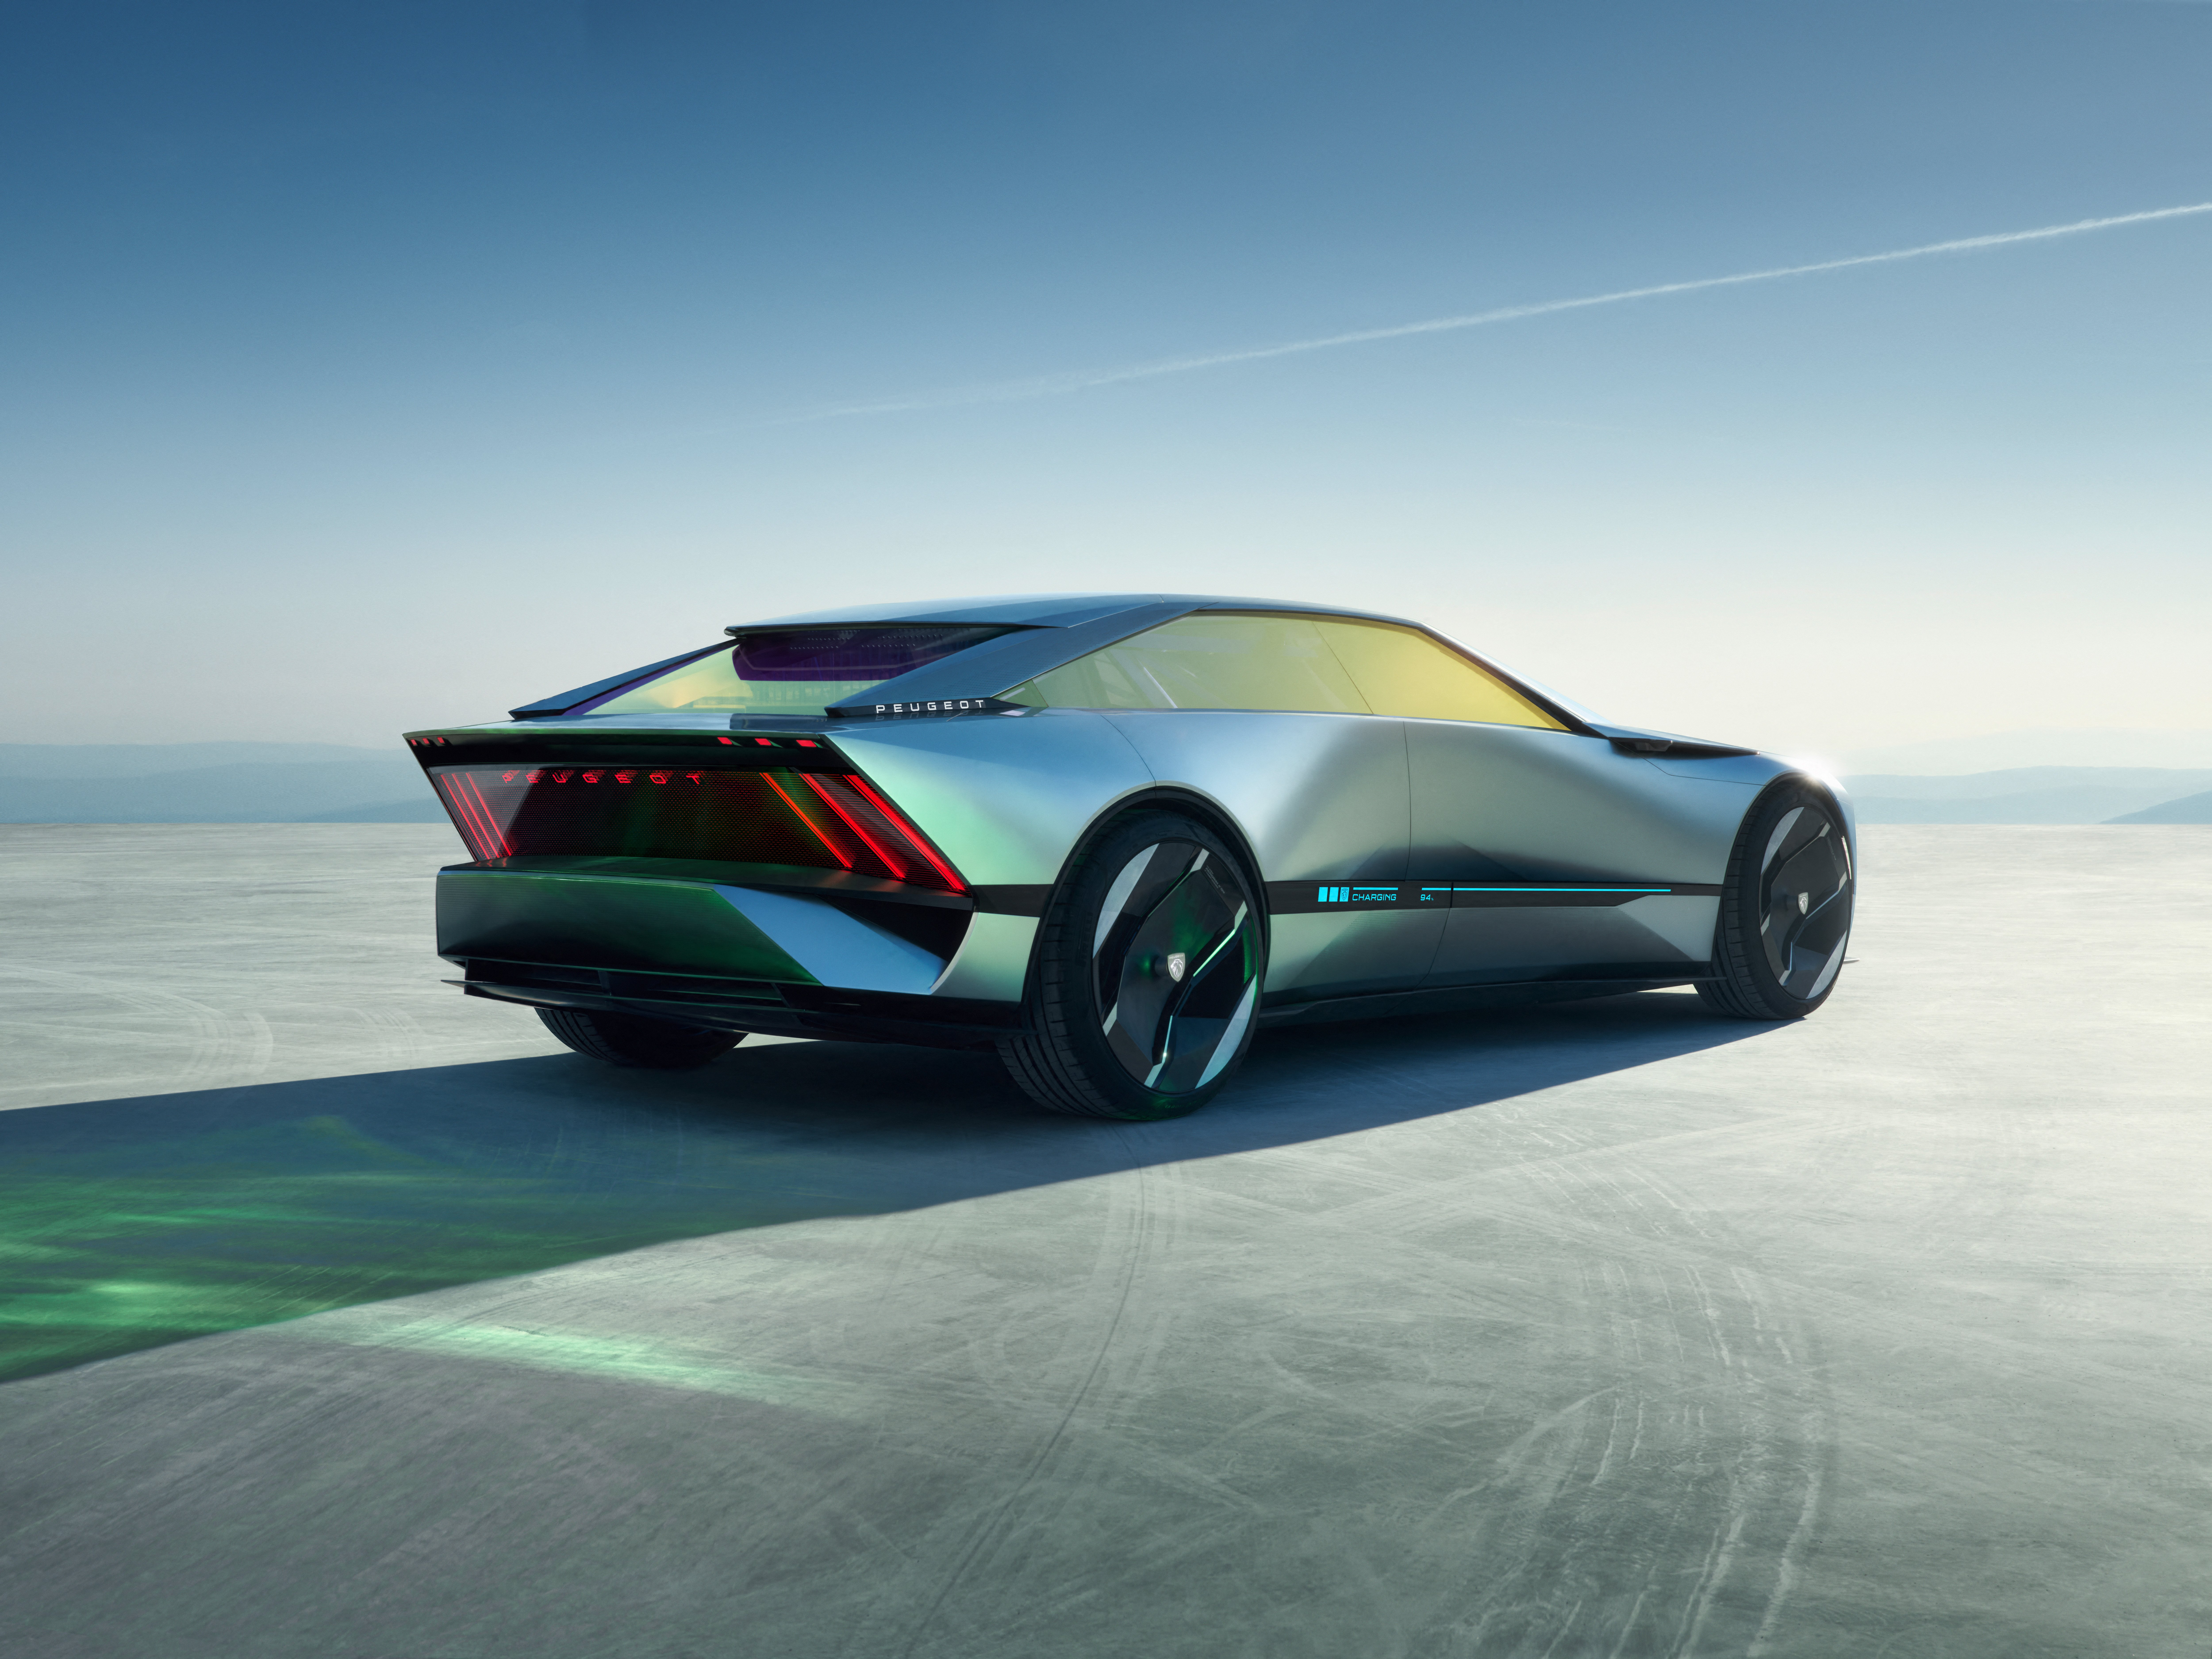 Fondos de pantalla Peugeot Inception Concept